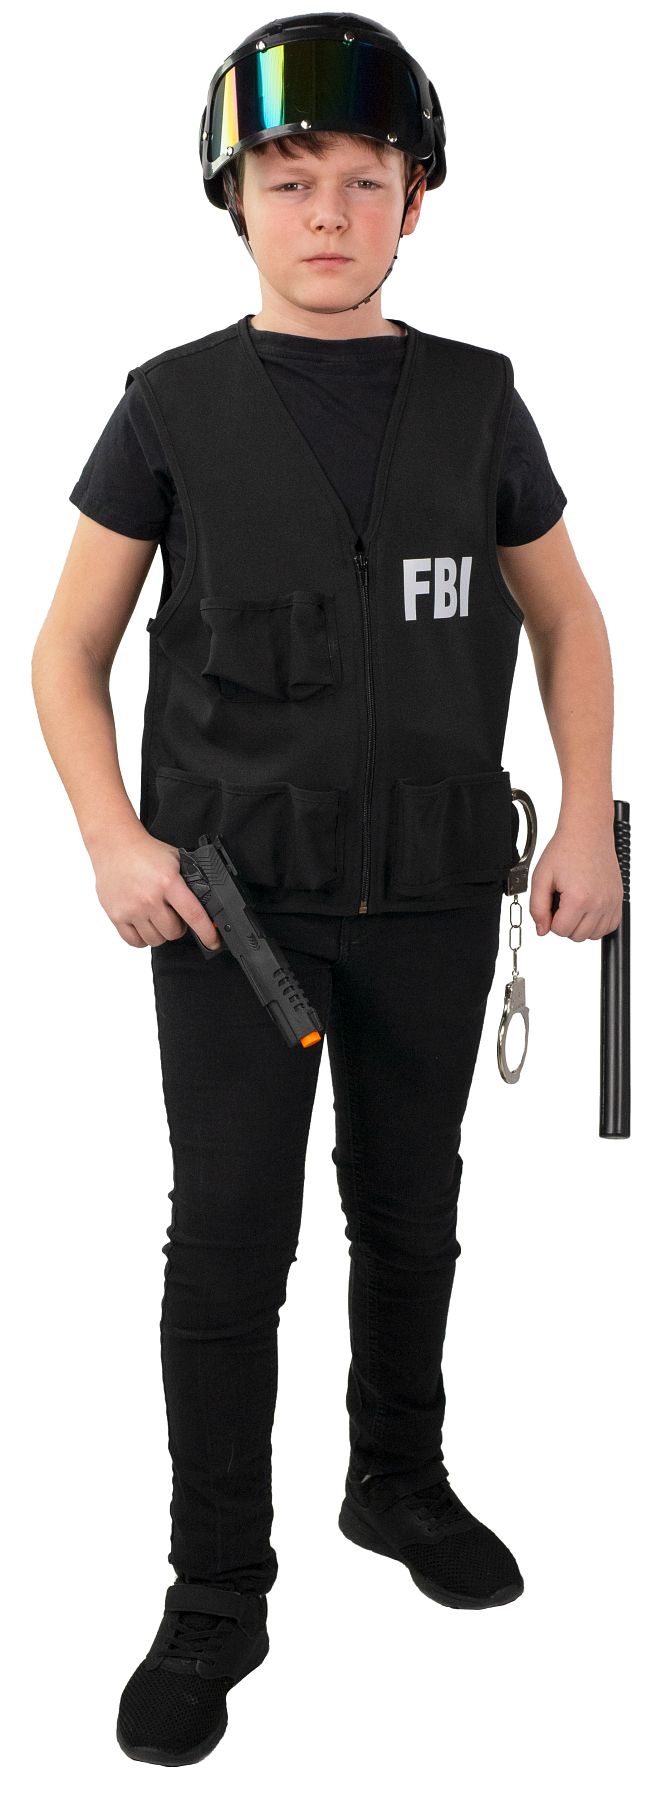 Gilet FBI